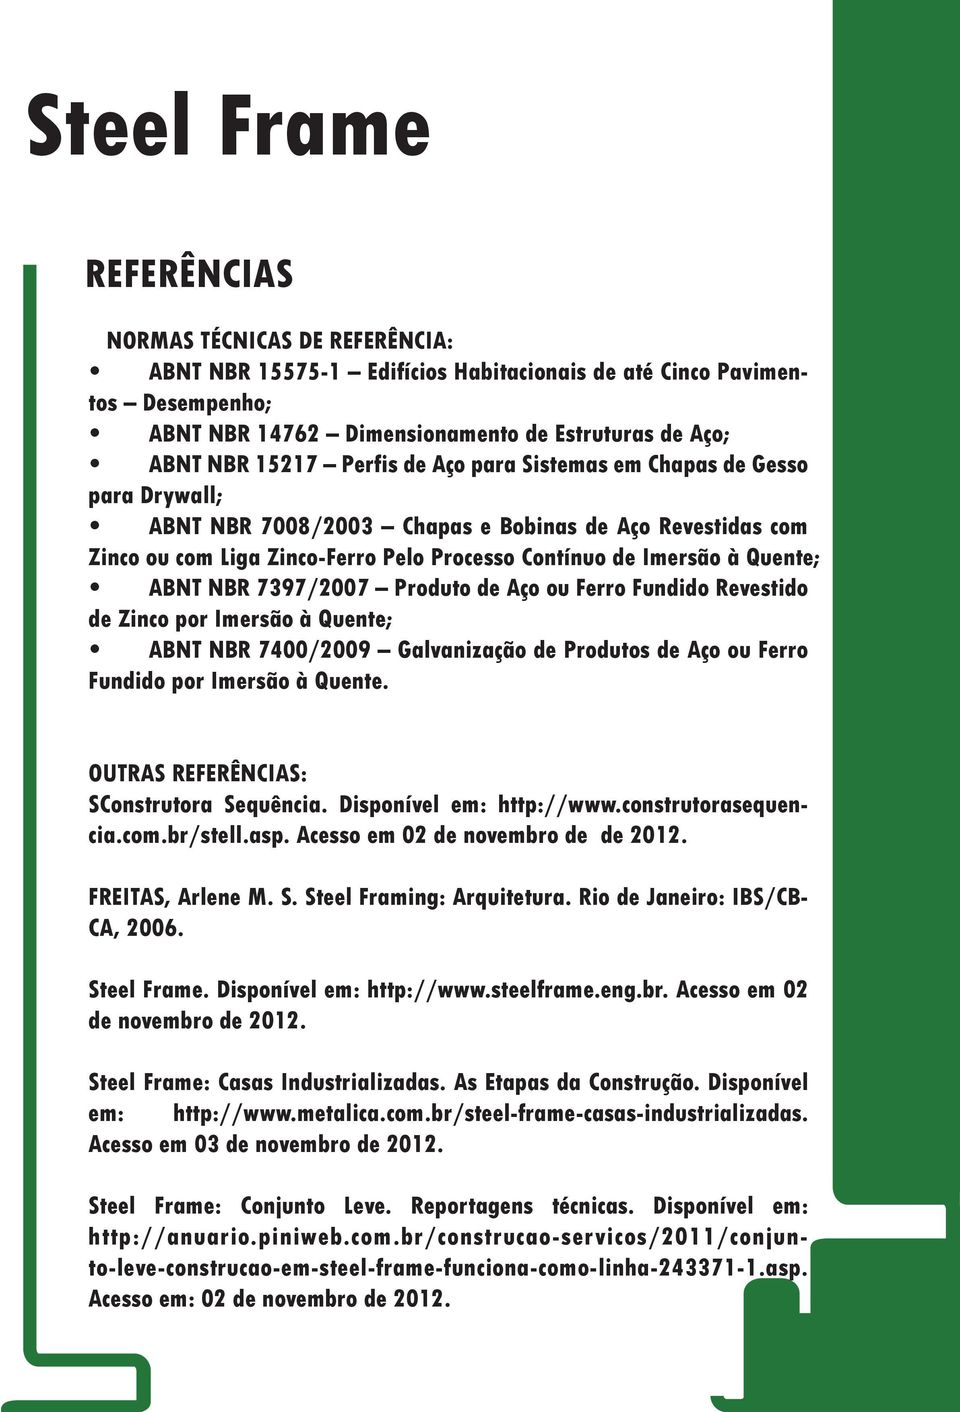 7397/2007 Produto de Aço ou Ferro Fundido Revestido de Zinco por Imersão à Quente; ABNT NBR 7400/2009 Galvanização de Produtos de Aço ou Ferro Fundido por Imersão à Quente.